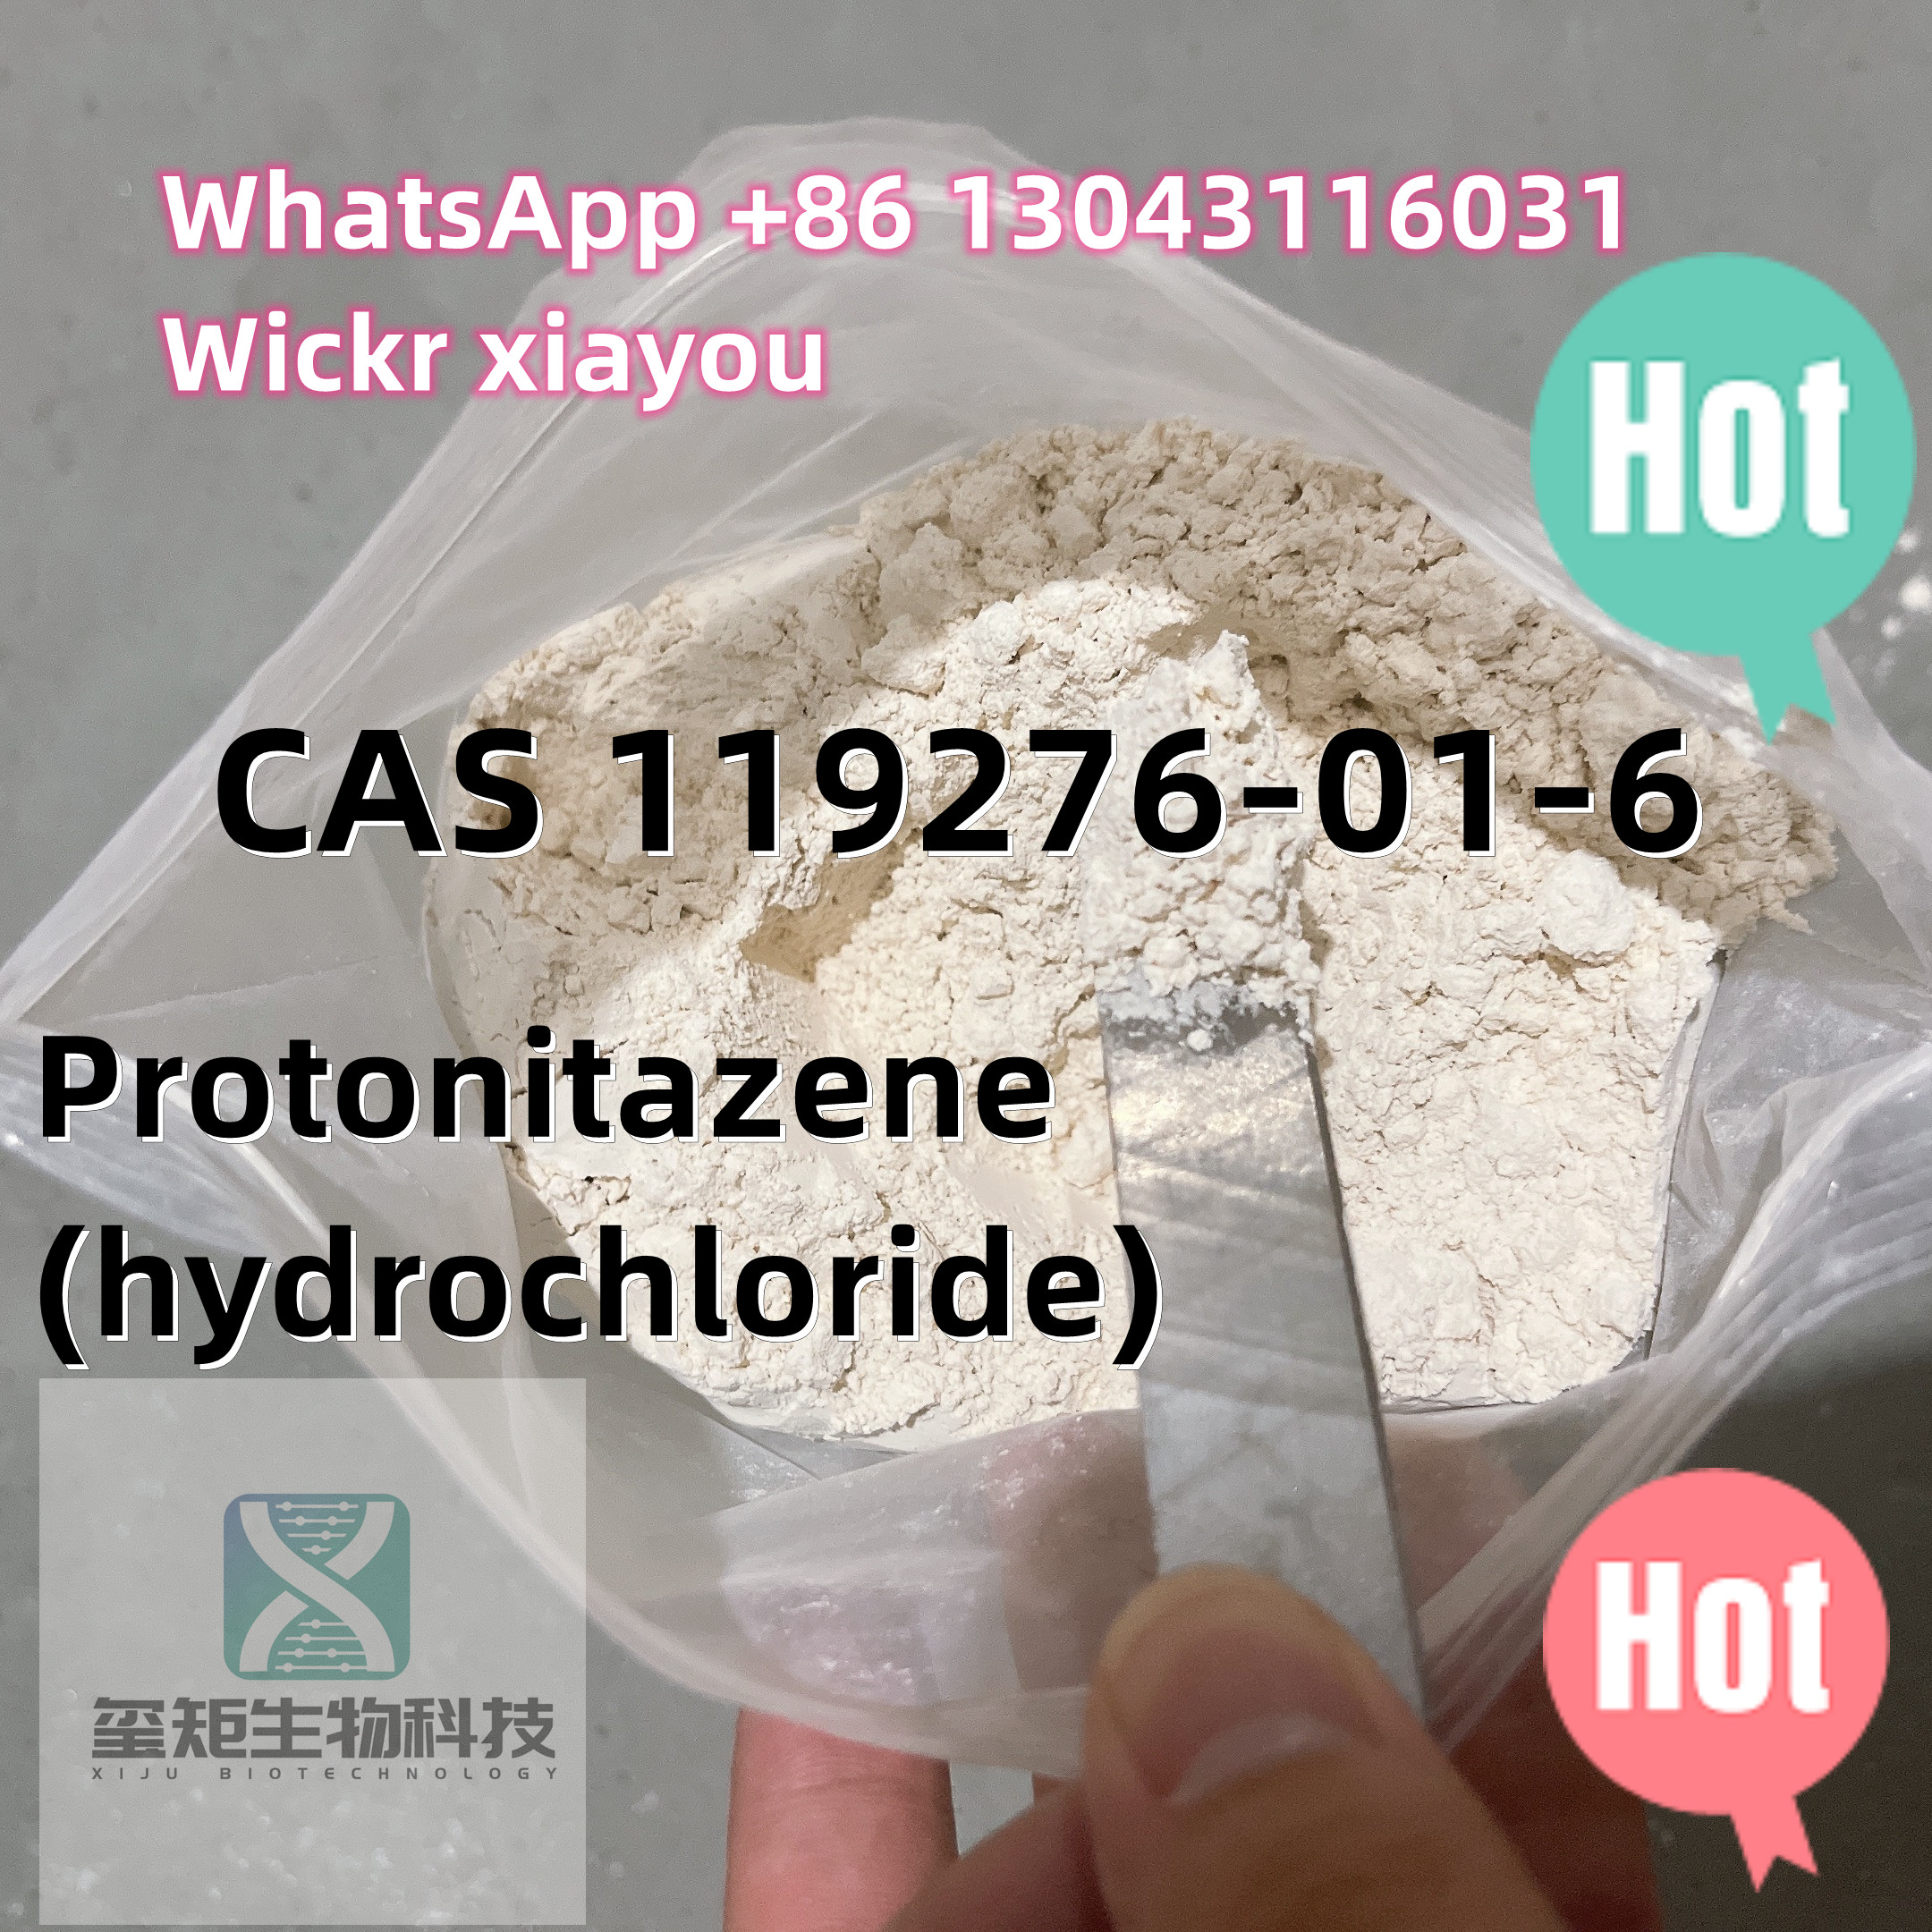 Pulbere de calitate superioară cu puritate 99% Protonitazen-clorhidrat CAS 119276-01-6 ,Threema: 9JPV7VEE, Wickr ME：xiayou